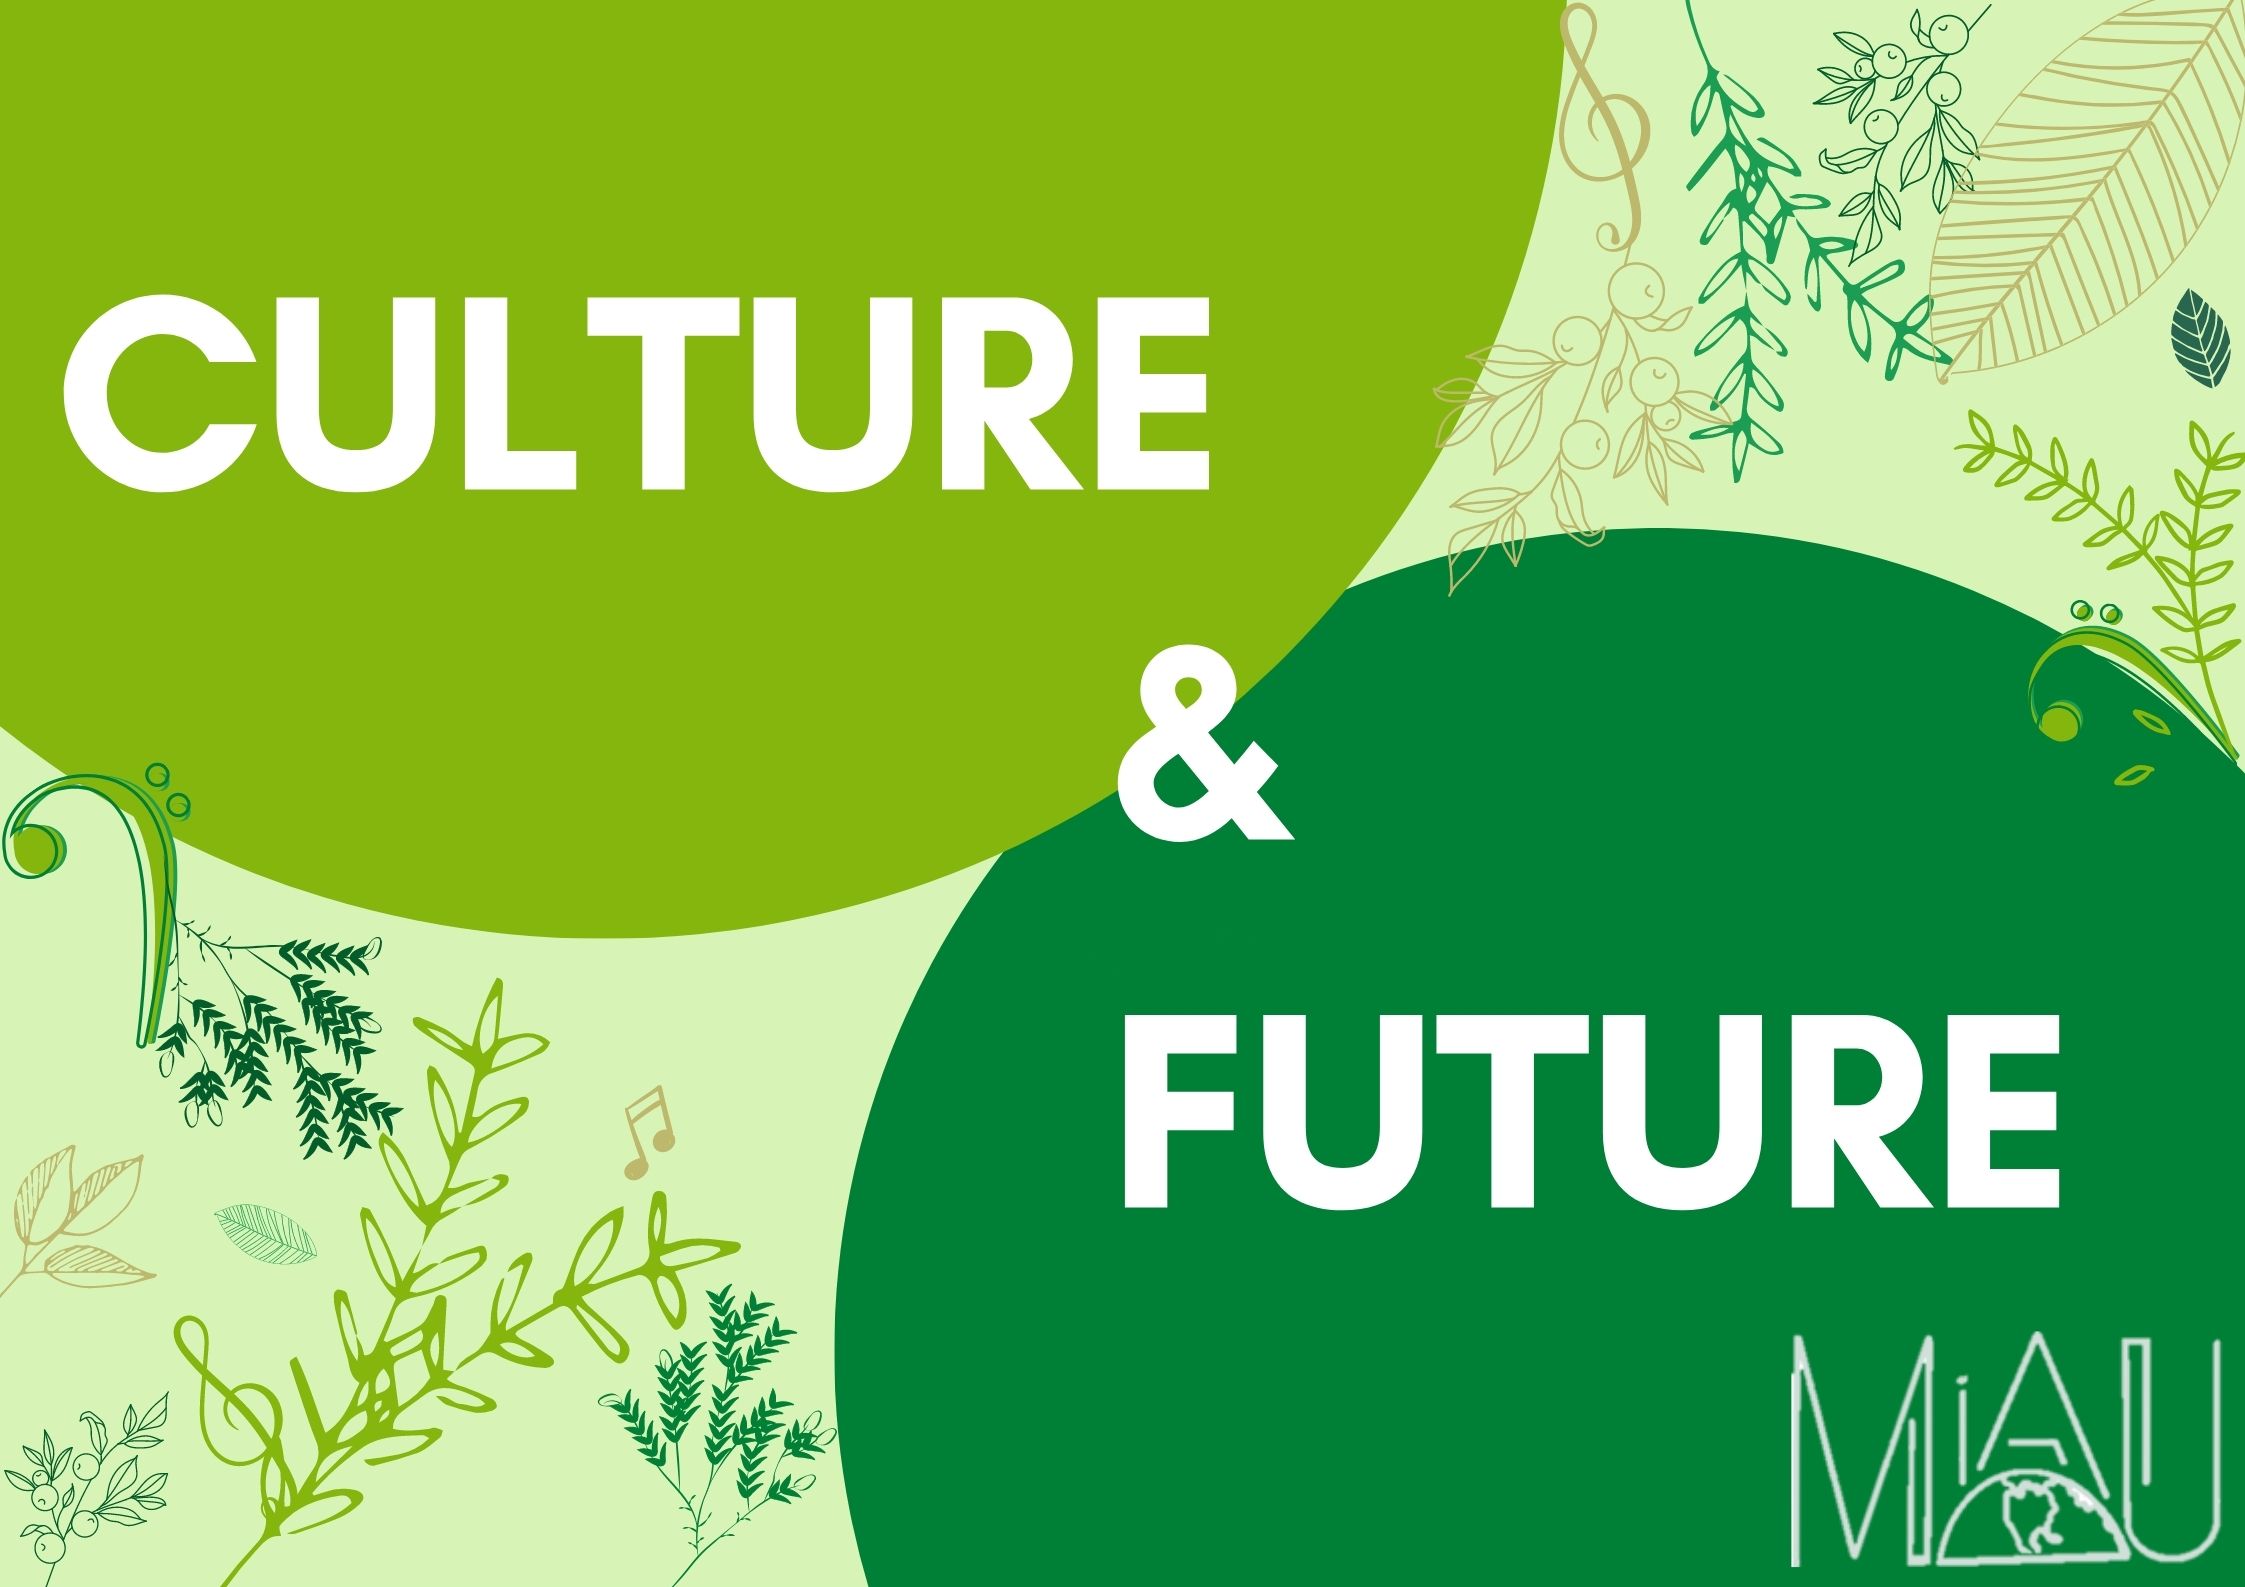 Culture and Future | Motiv: MiAU